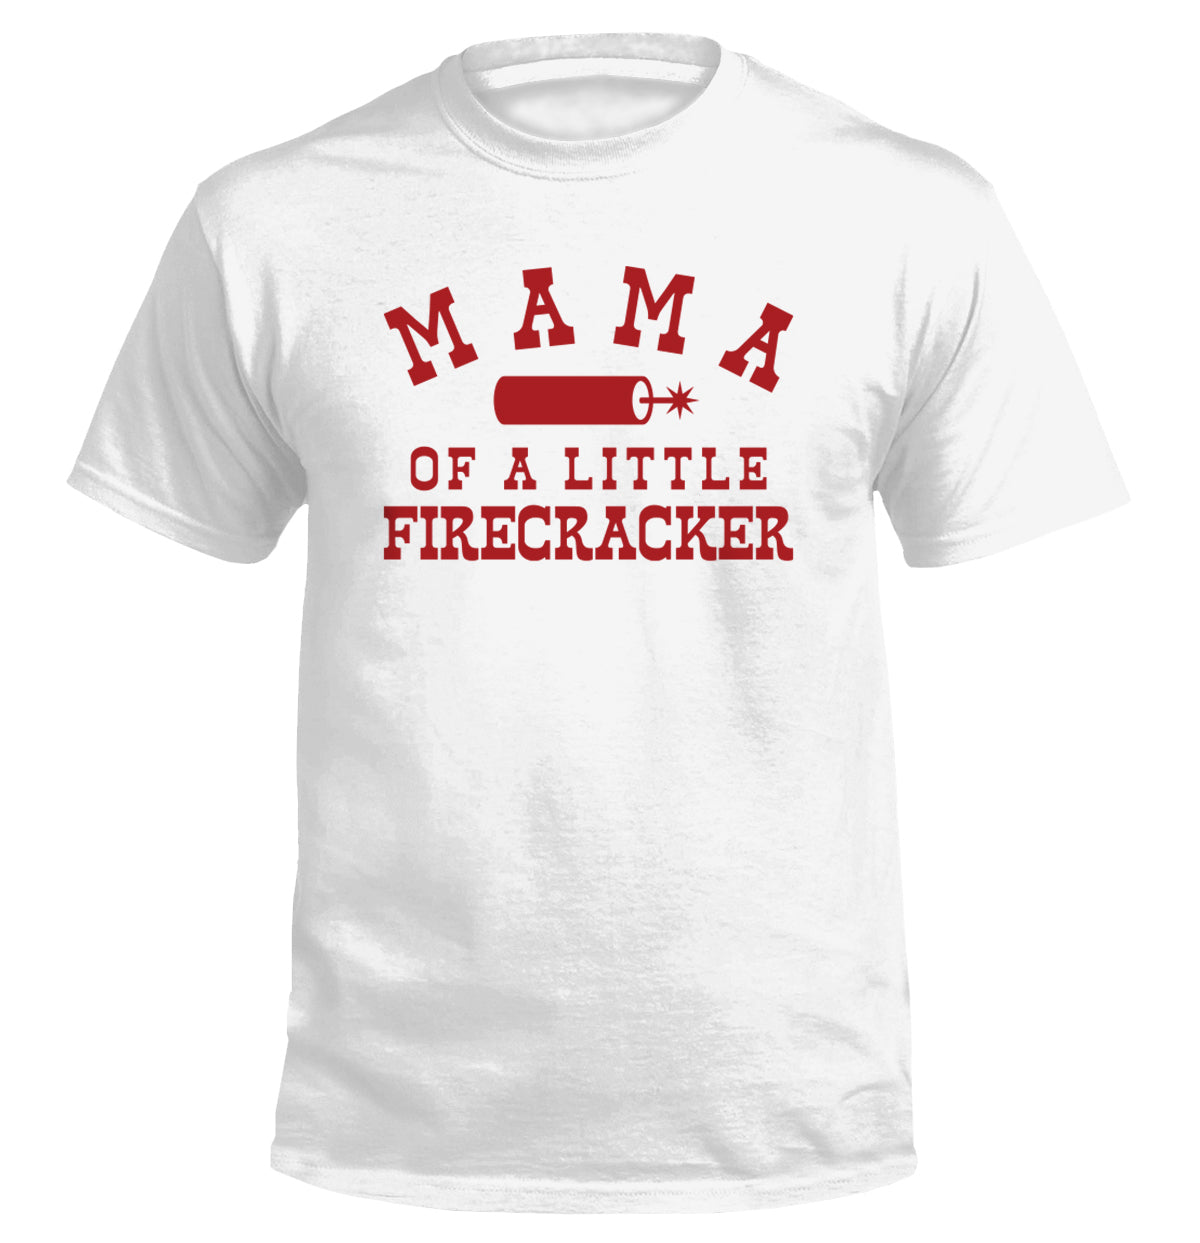 Mama of a Little Firecracker and Little Firecracker